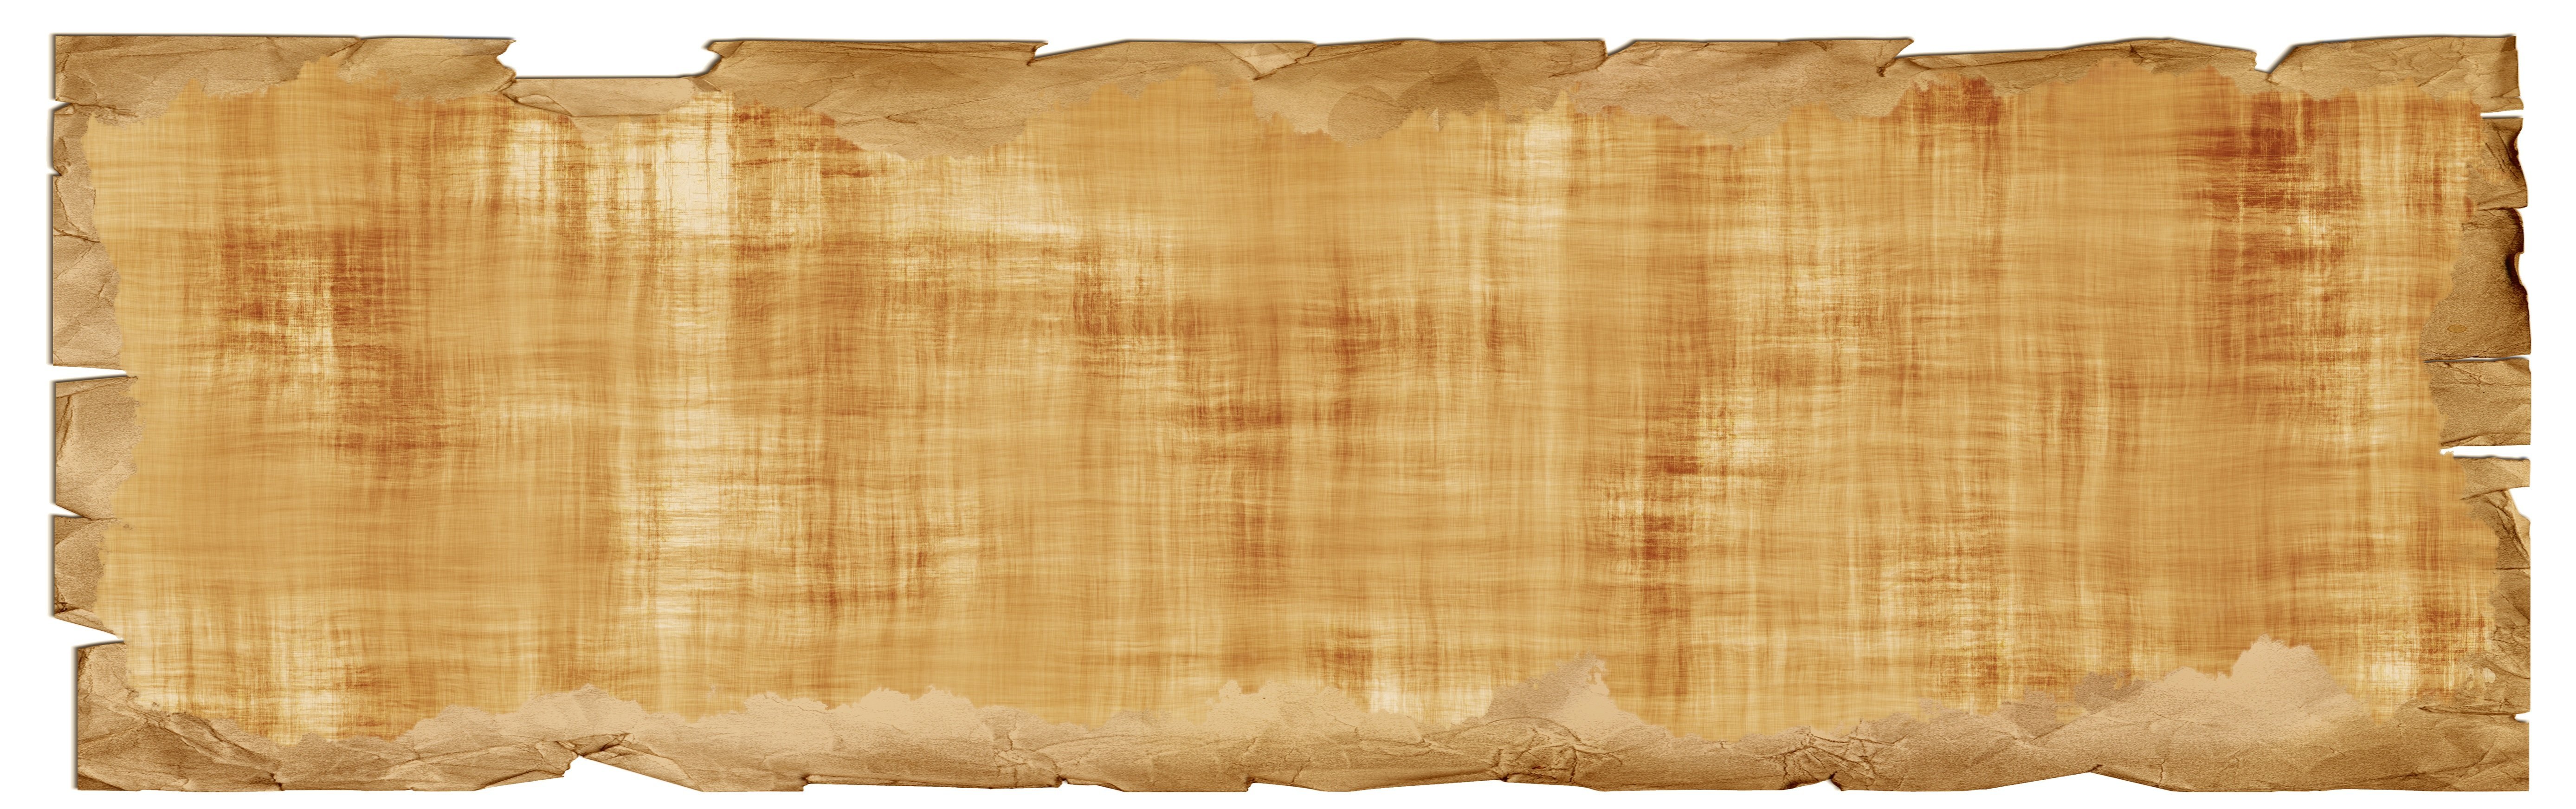 Папирус пергамент береста